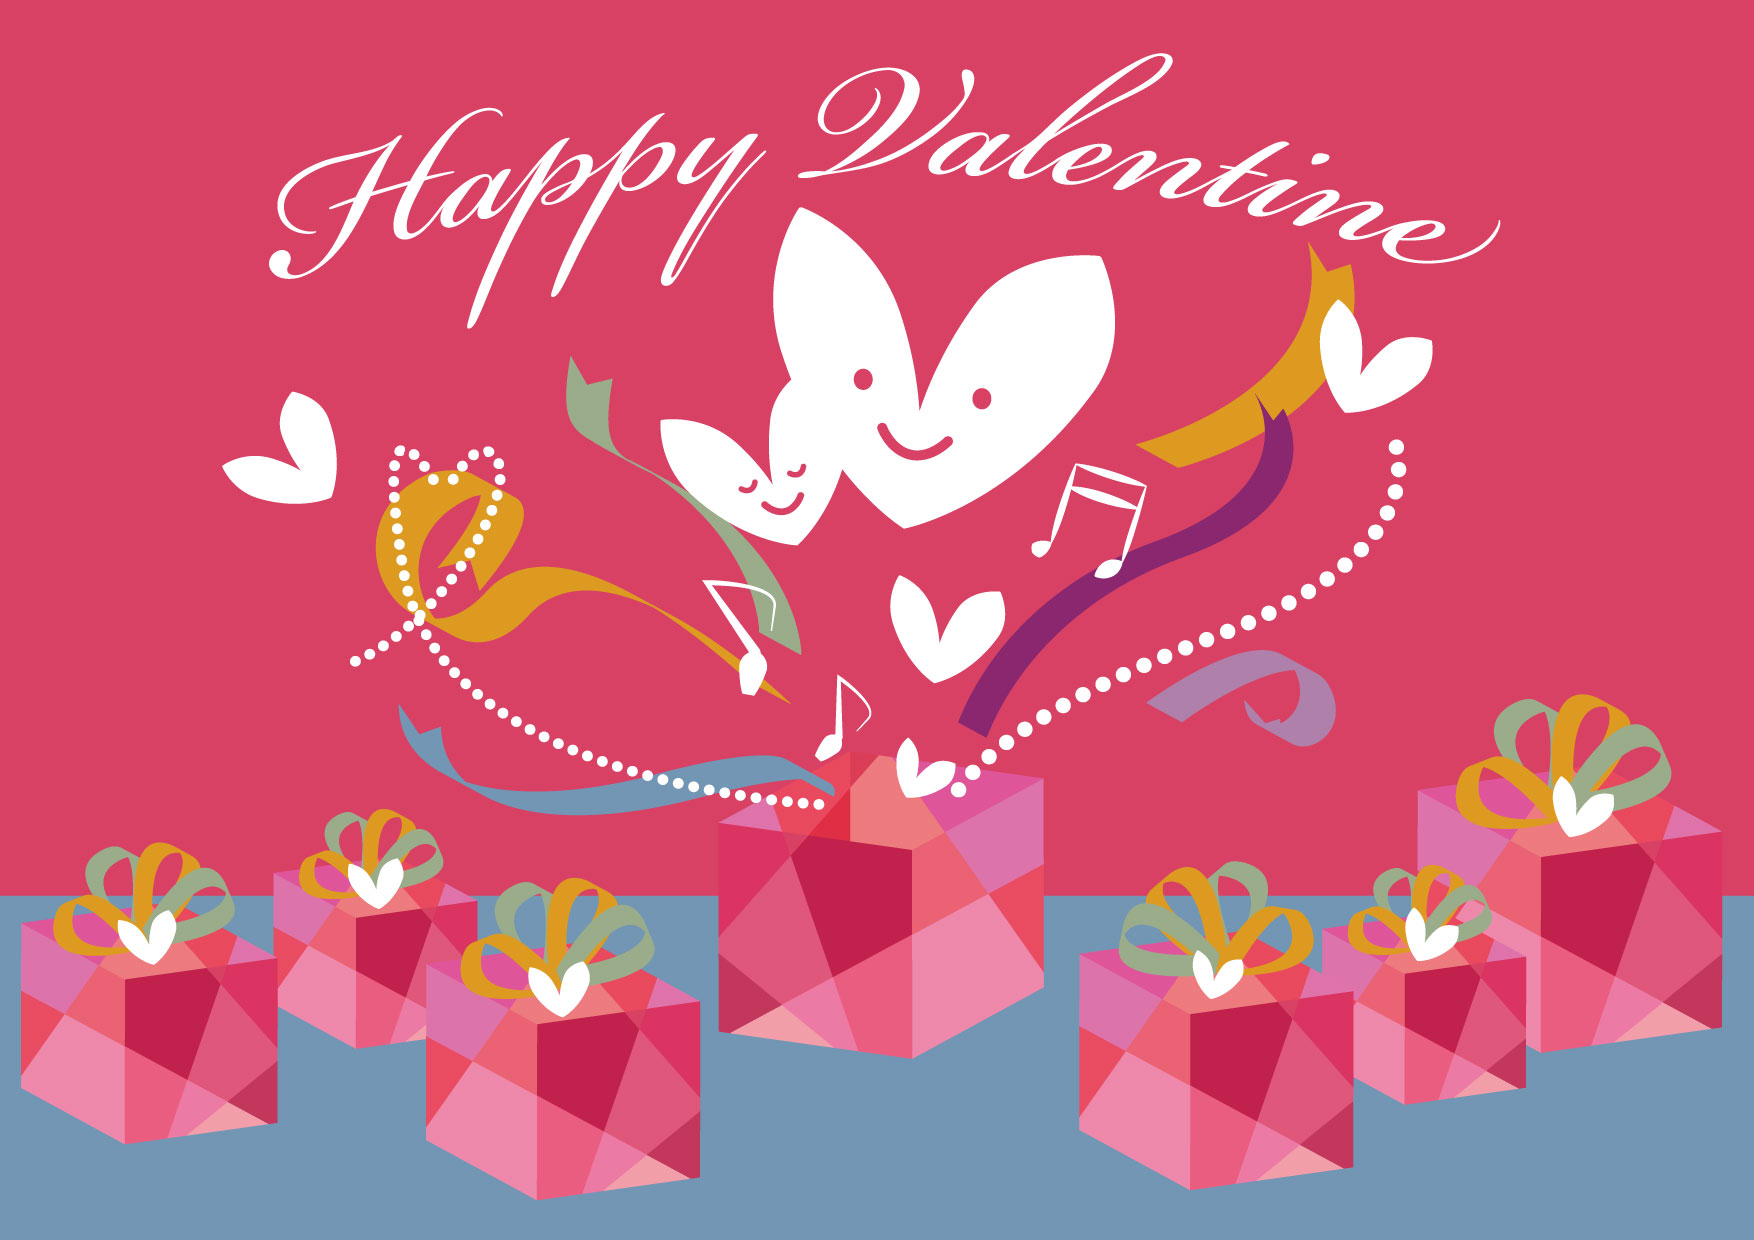 可愛いイラスト無料 バレンタイン ハート プレゼント リボン Free Illustration Valentine Heart Present Ribbon 公式 イラスト素材サイト イラストダウンロード